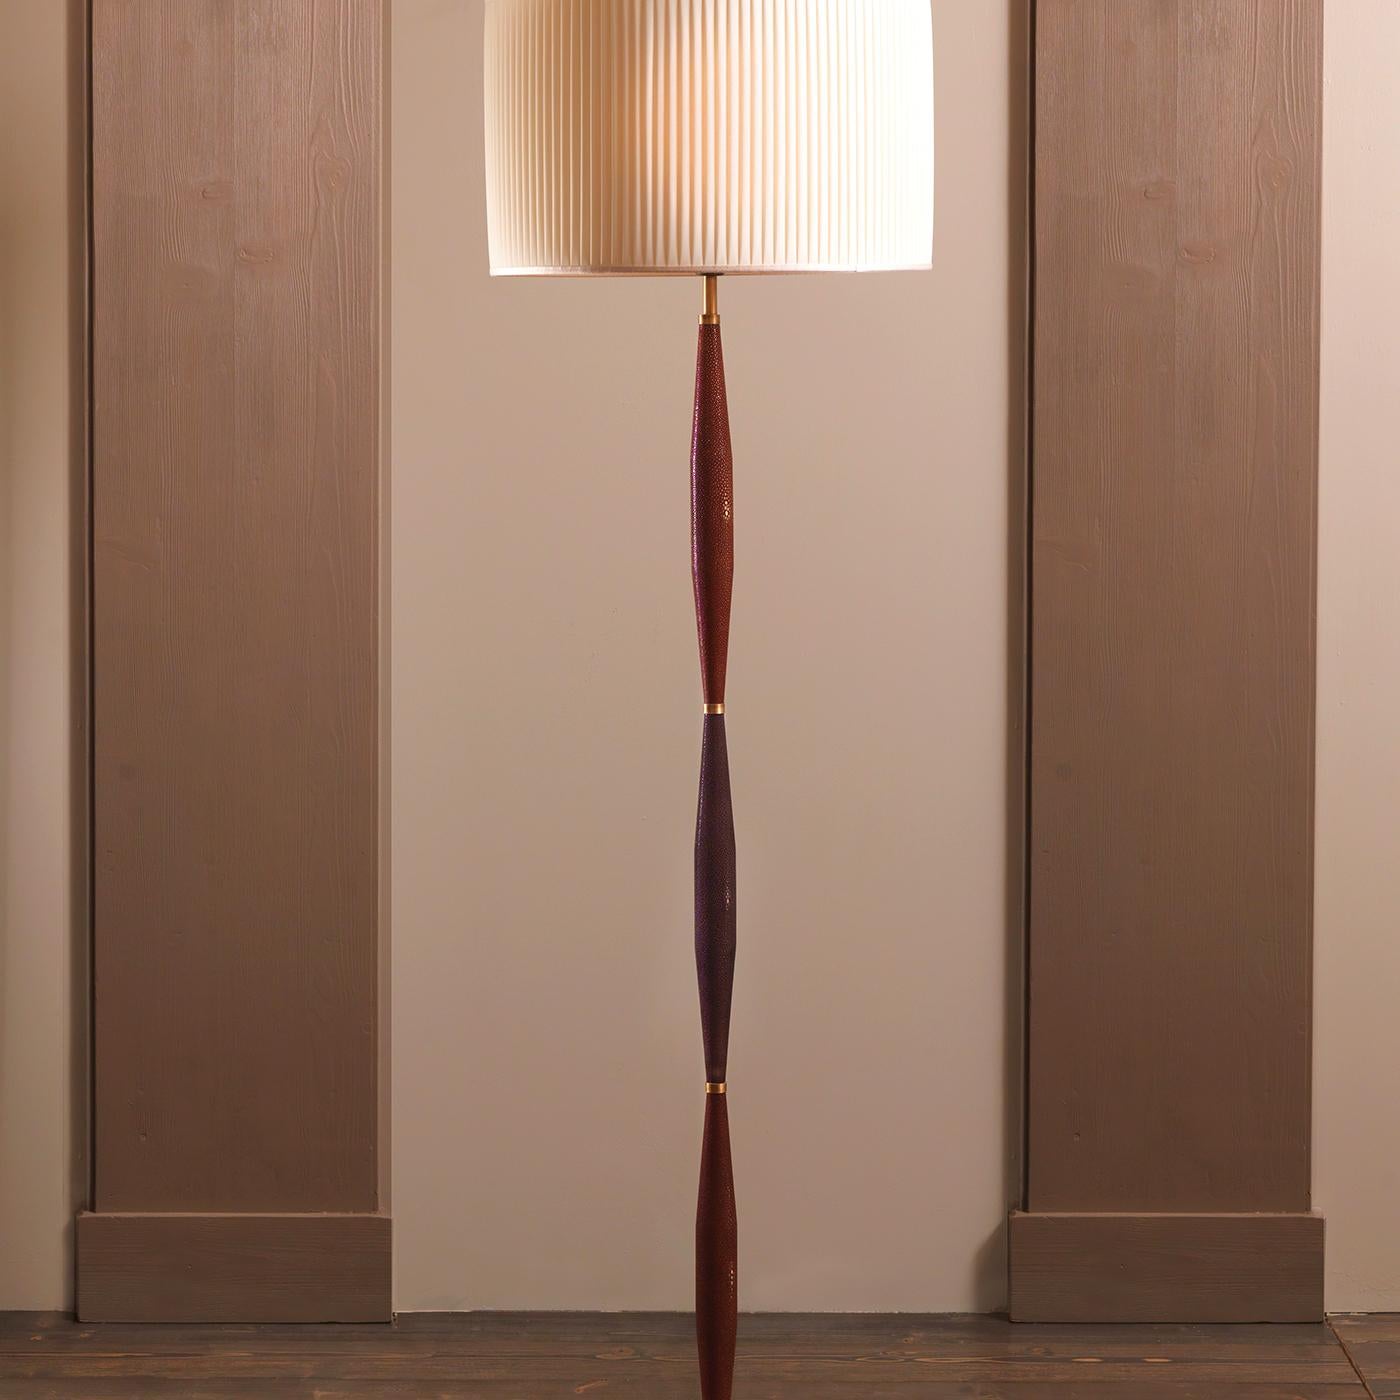 Conçu par Ciarmoli Queda Studio, ce lampadaire sophistiqué est un exercice d'élégance intemporelle. La tige est constituée d'éléments doublement effilés recouverts de peau de galuchat et marqués en haut et en bas par des accents en laiton. Il repose